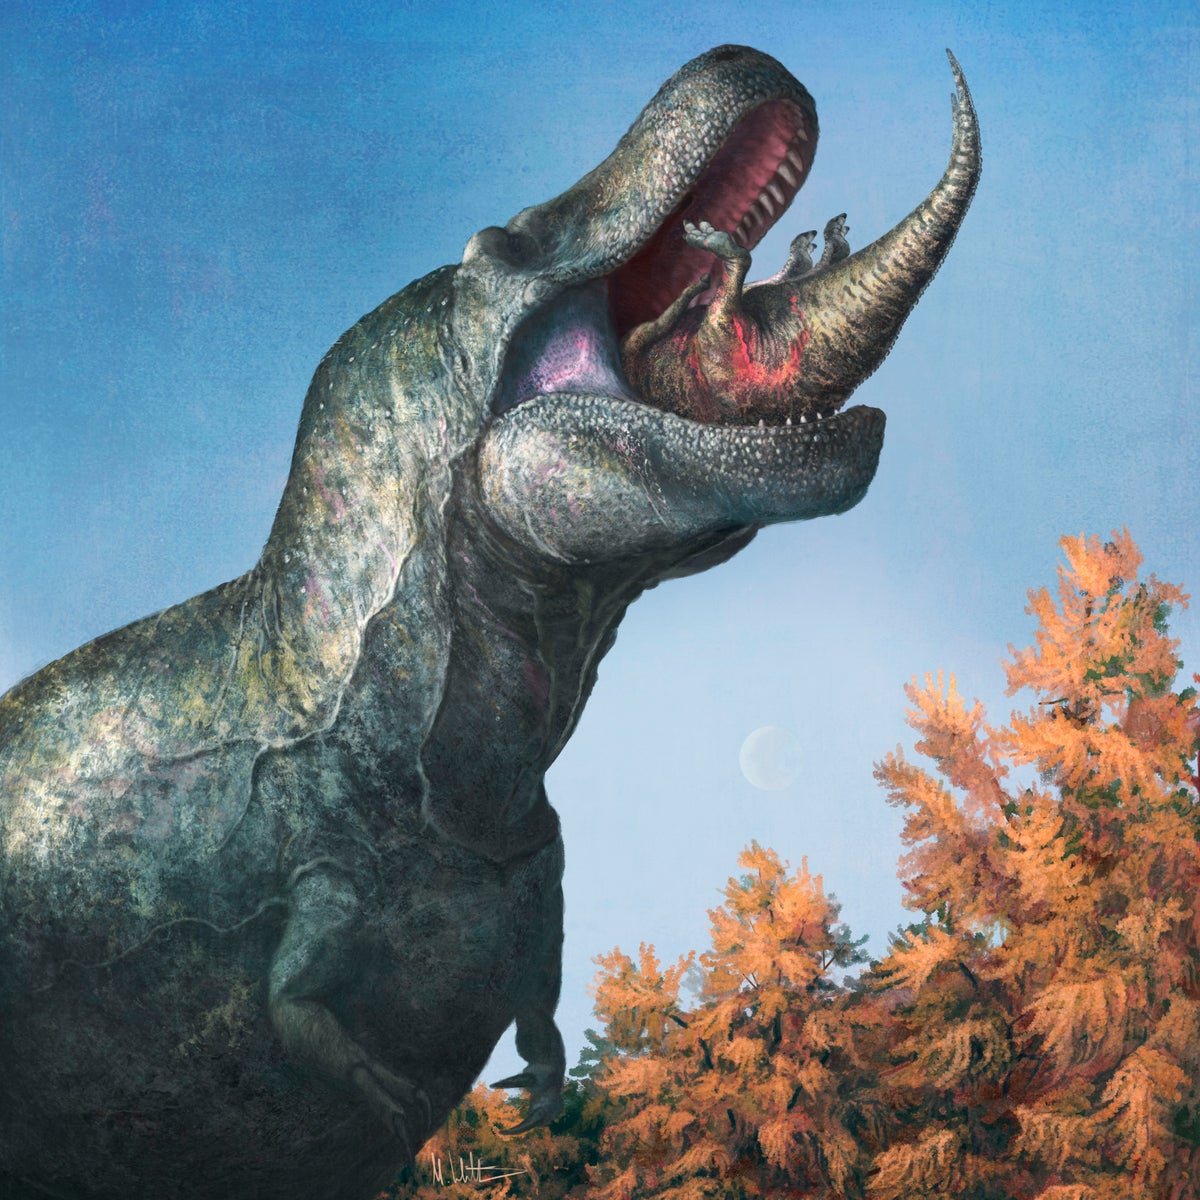 Has T. rex lost its bite? Menacing snarl may be wrong